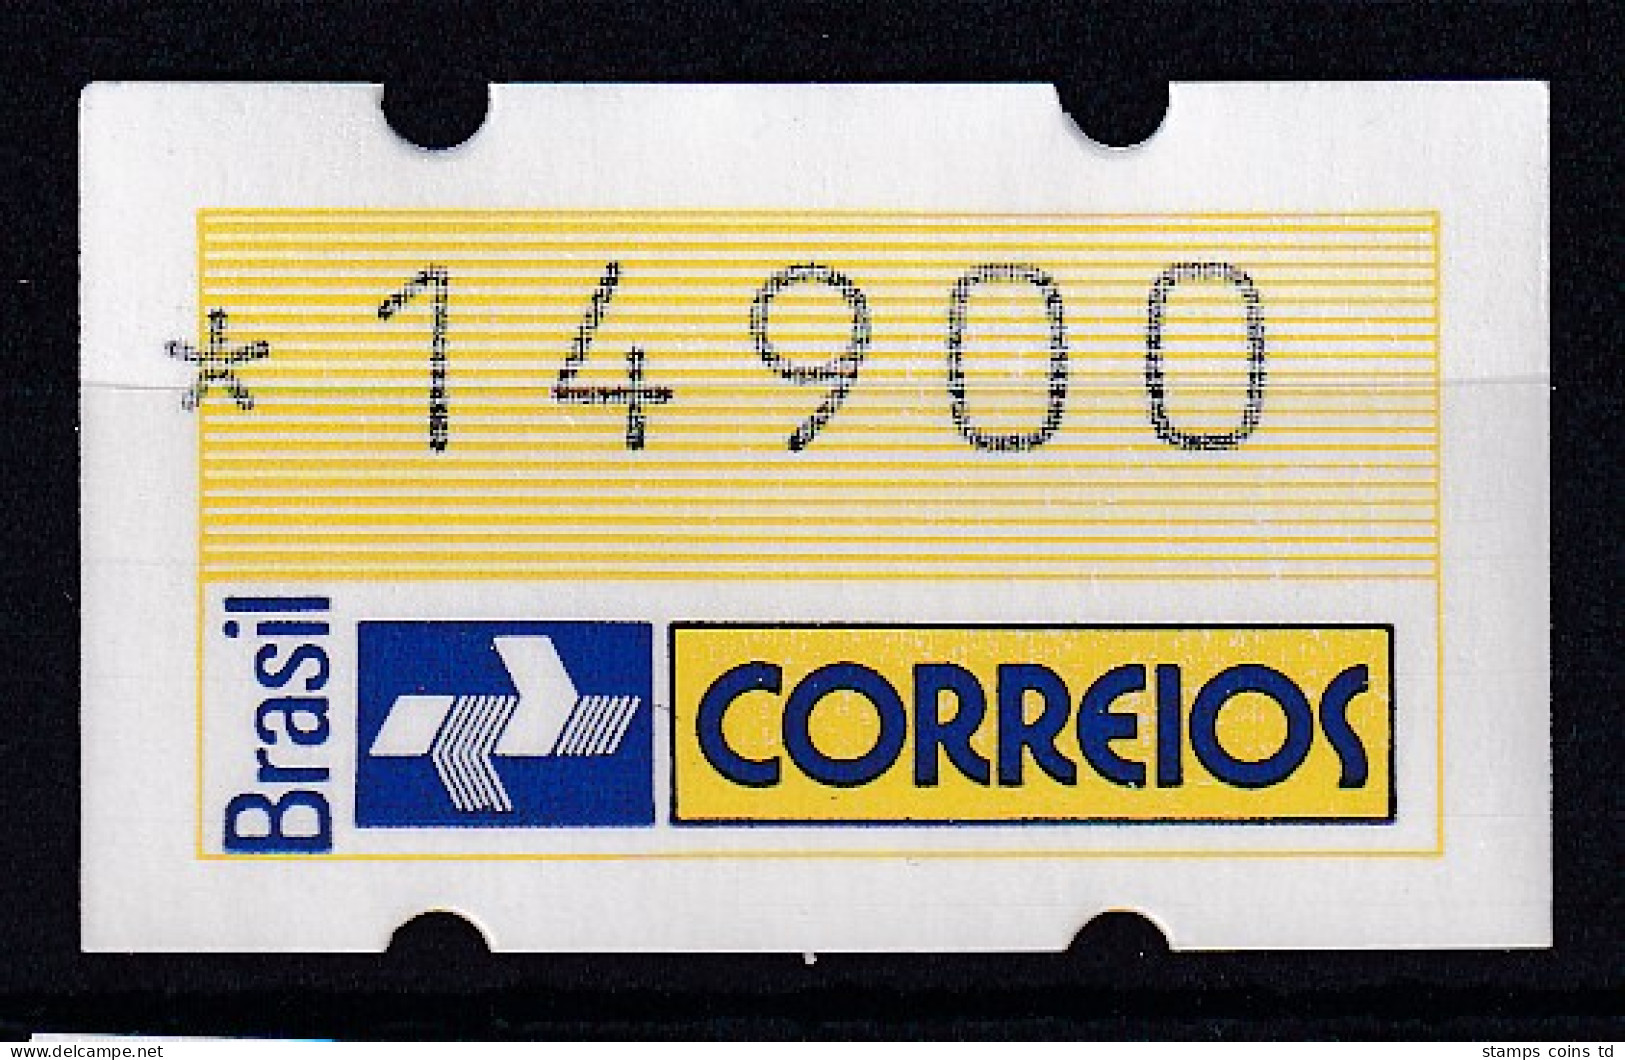 Brasilien 1993 ATM Postemblem Wertstufe 14900 Postfrisch ** - Frankeervignetten (Frama)